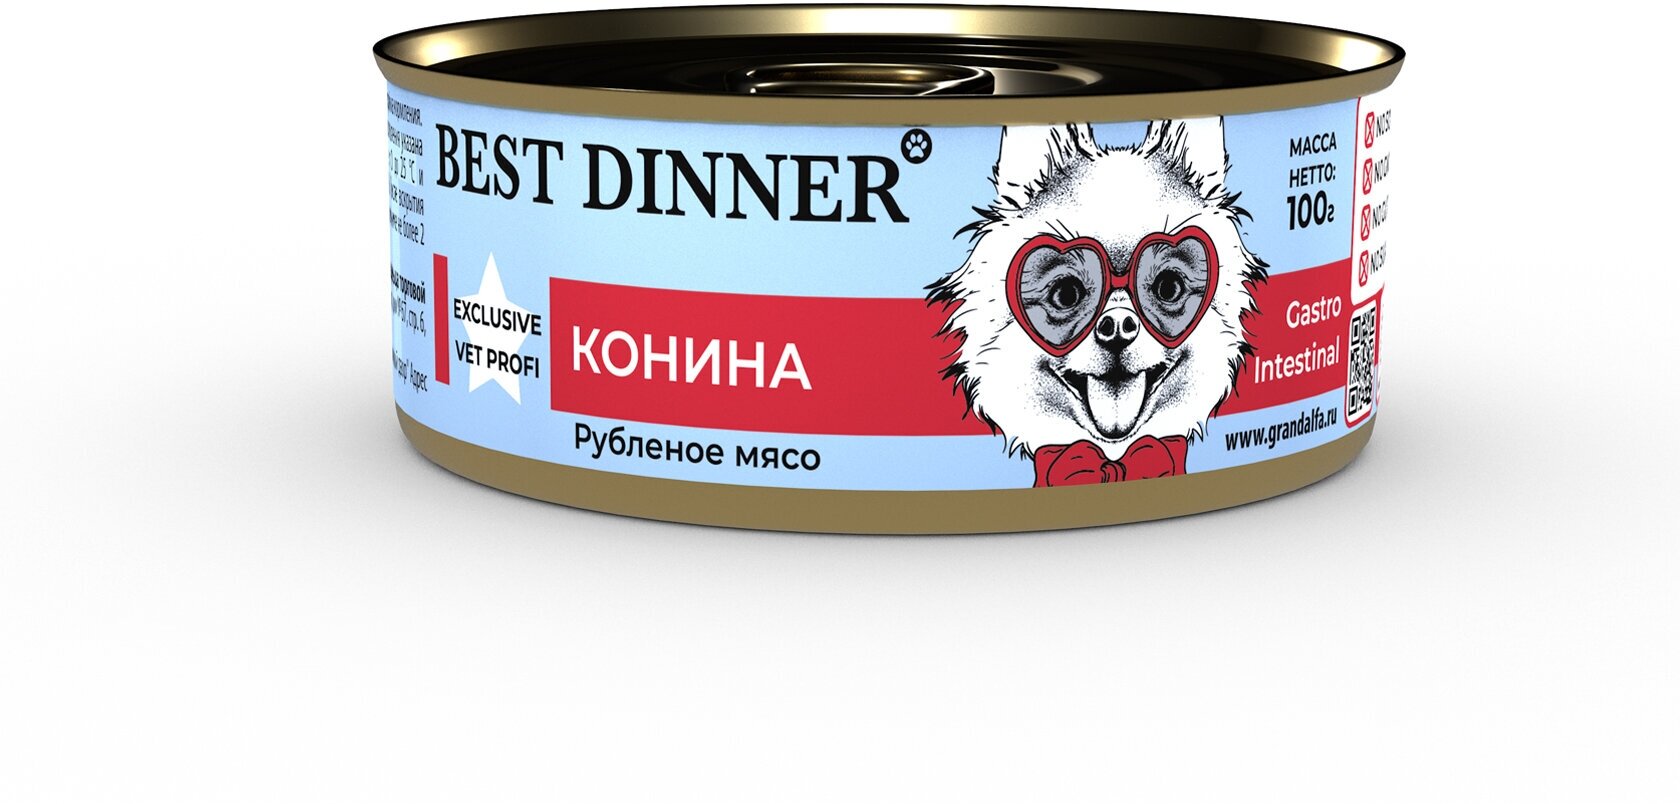 Best Dinner Vet Profi Gastro Intestinal Exclusive 24шт по 100г конина консервы для собак